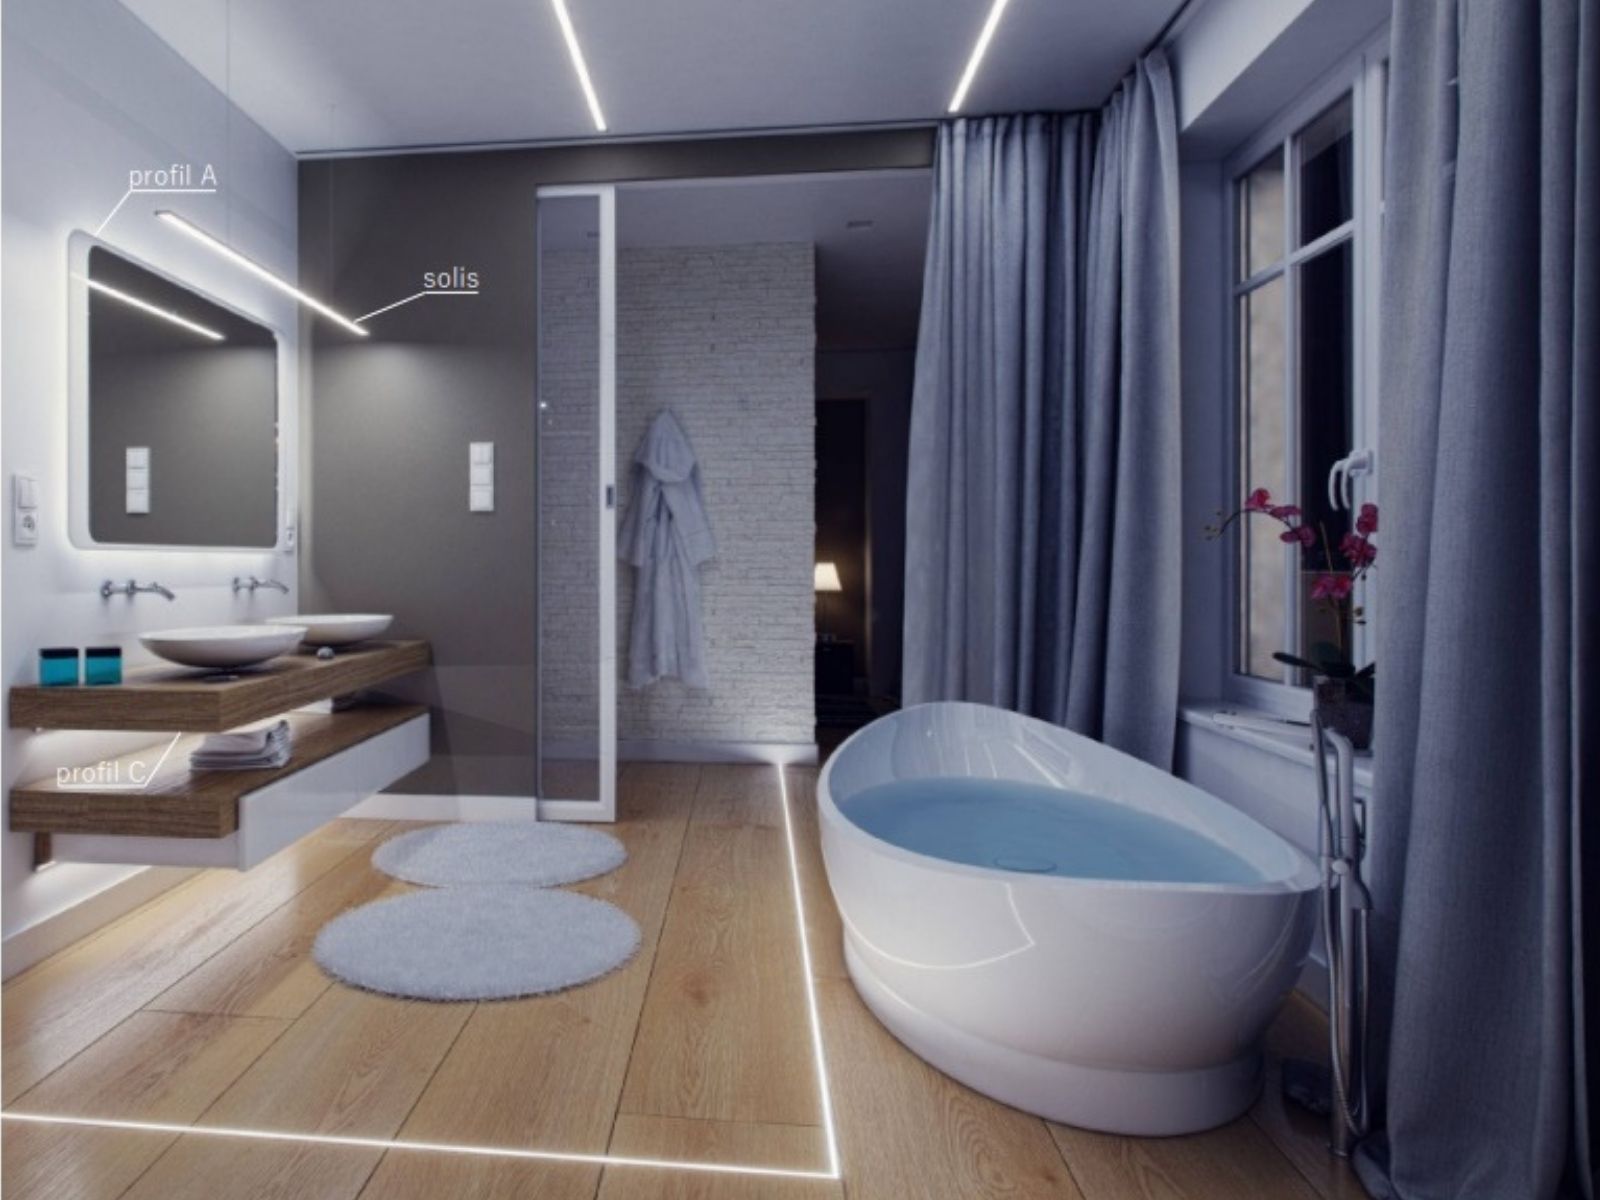 Jakie oświetlenie pasuje do jakiego stylu w łazience? - łazienka inspiracje